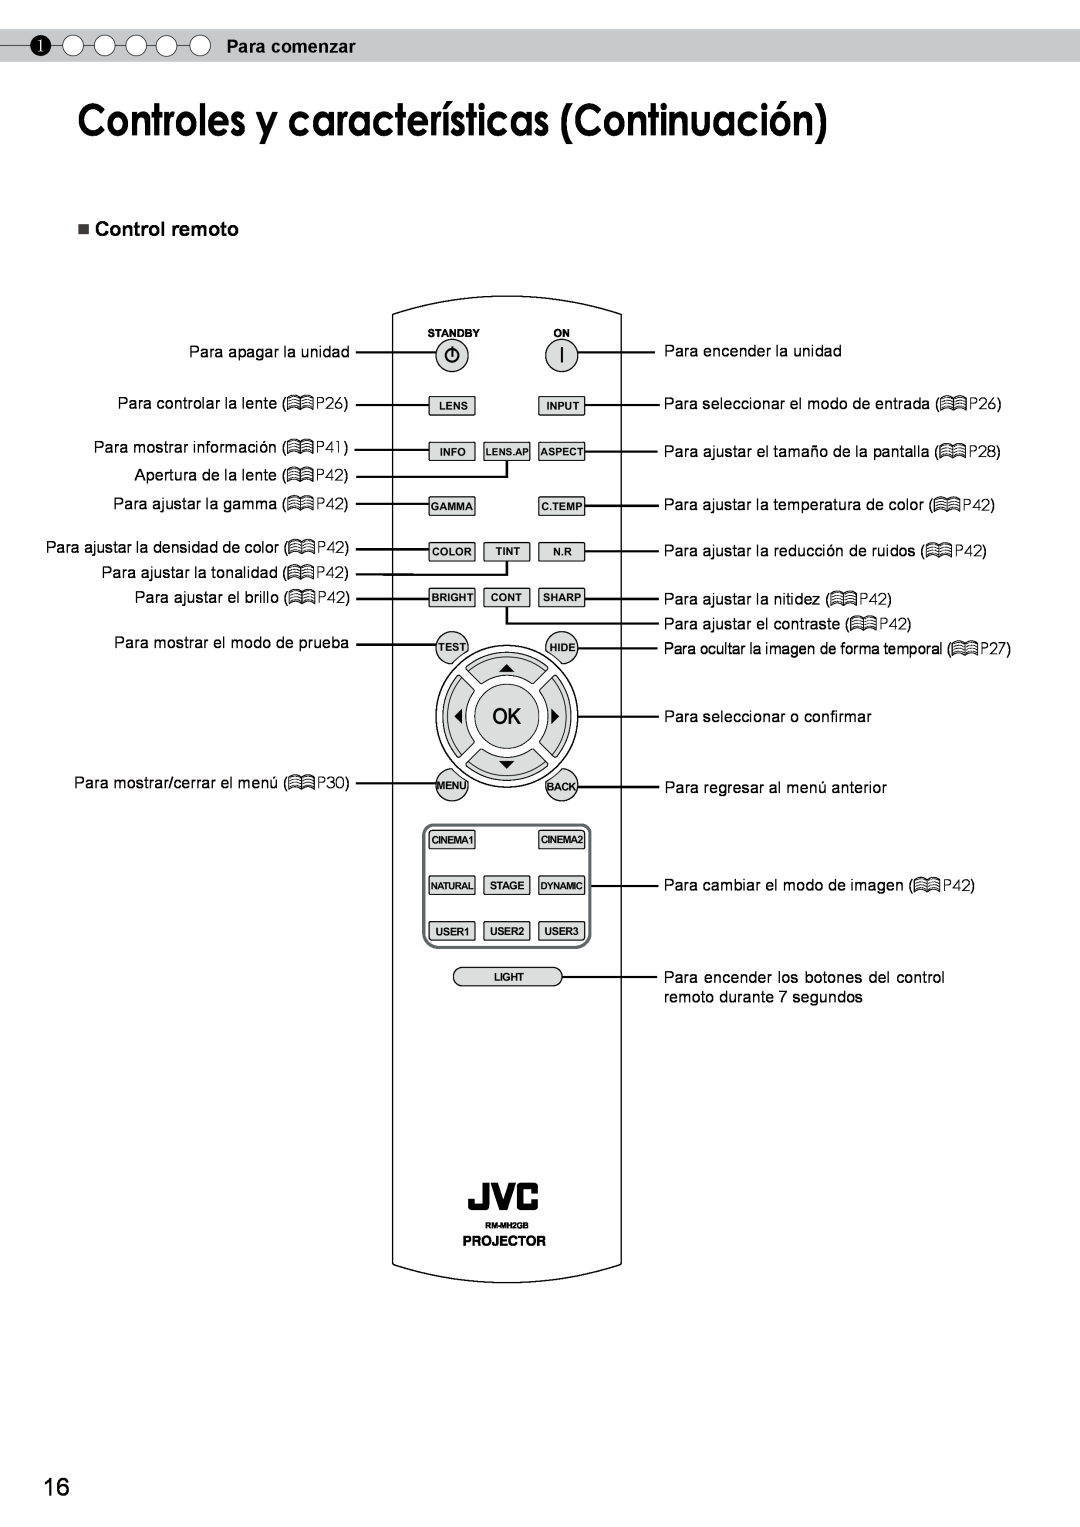 JVC DLA-RS10 Controles y características Continuación, Control remoto, Para comenzar, Para mostrar/cerrar el menú P30 